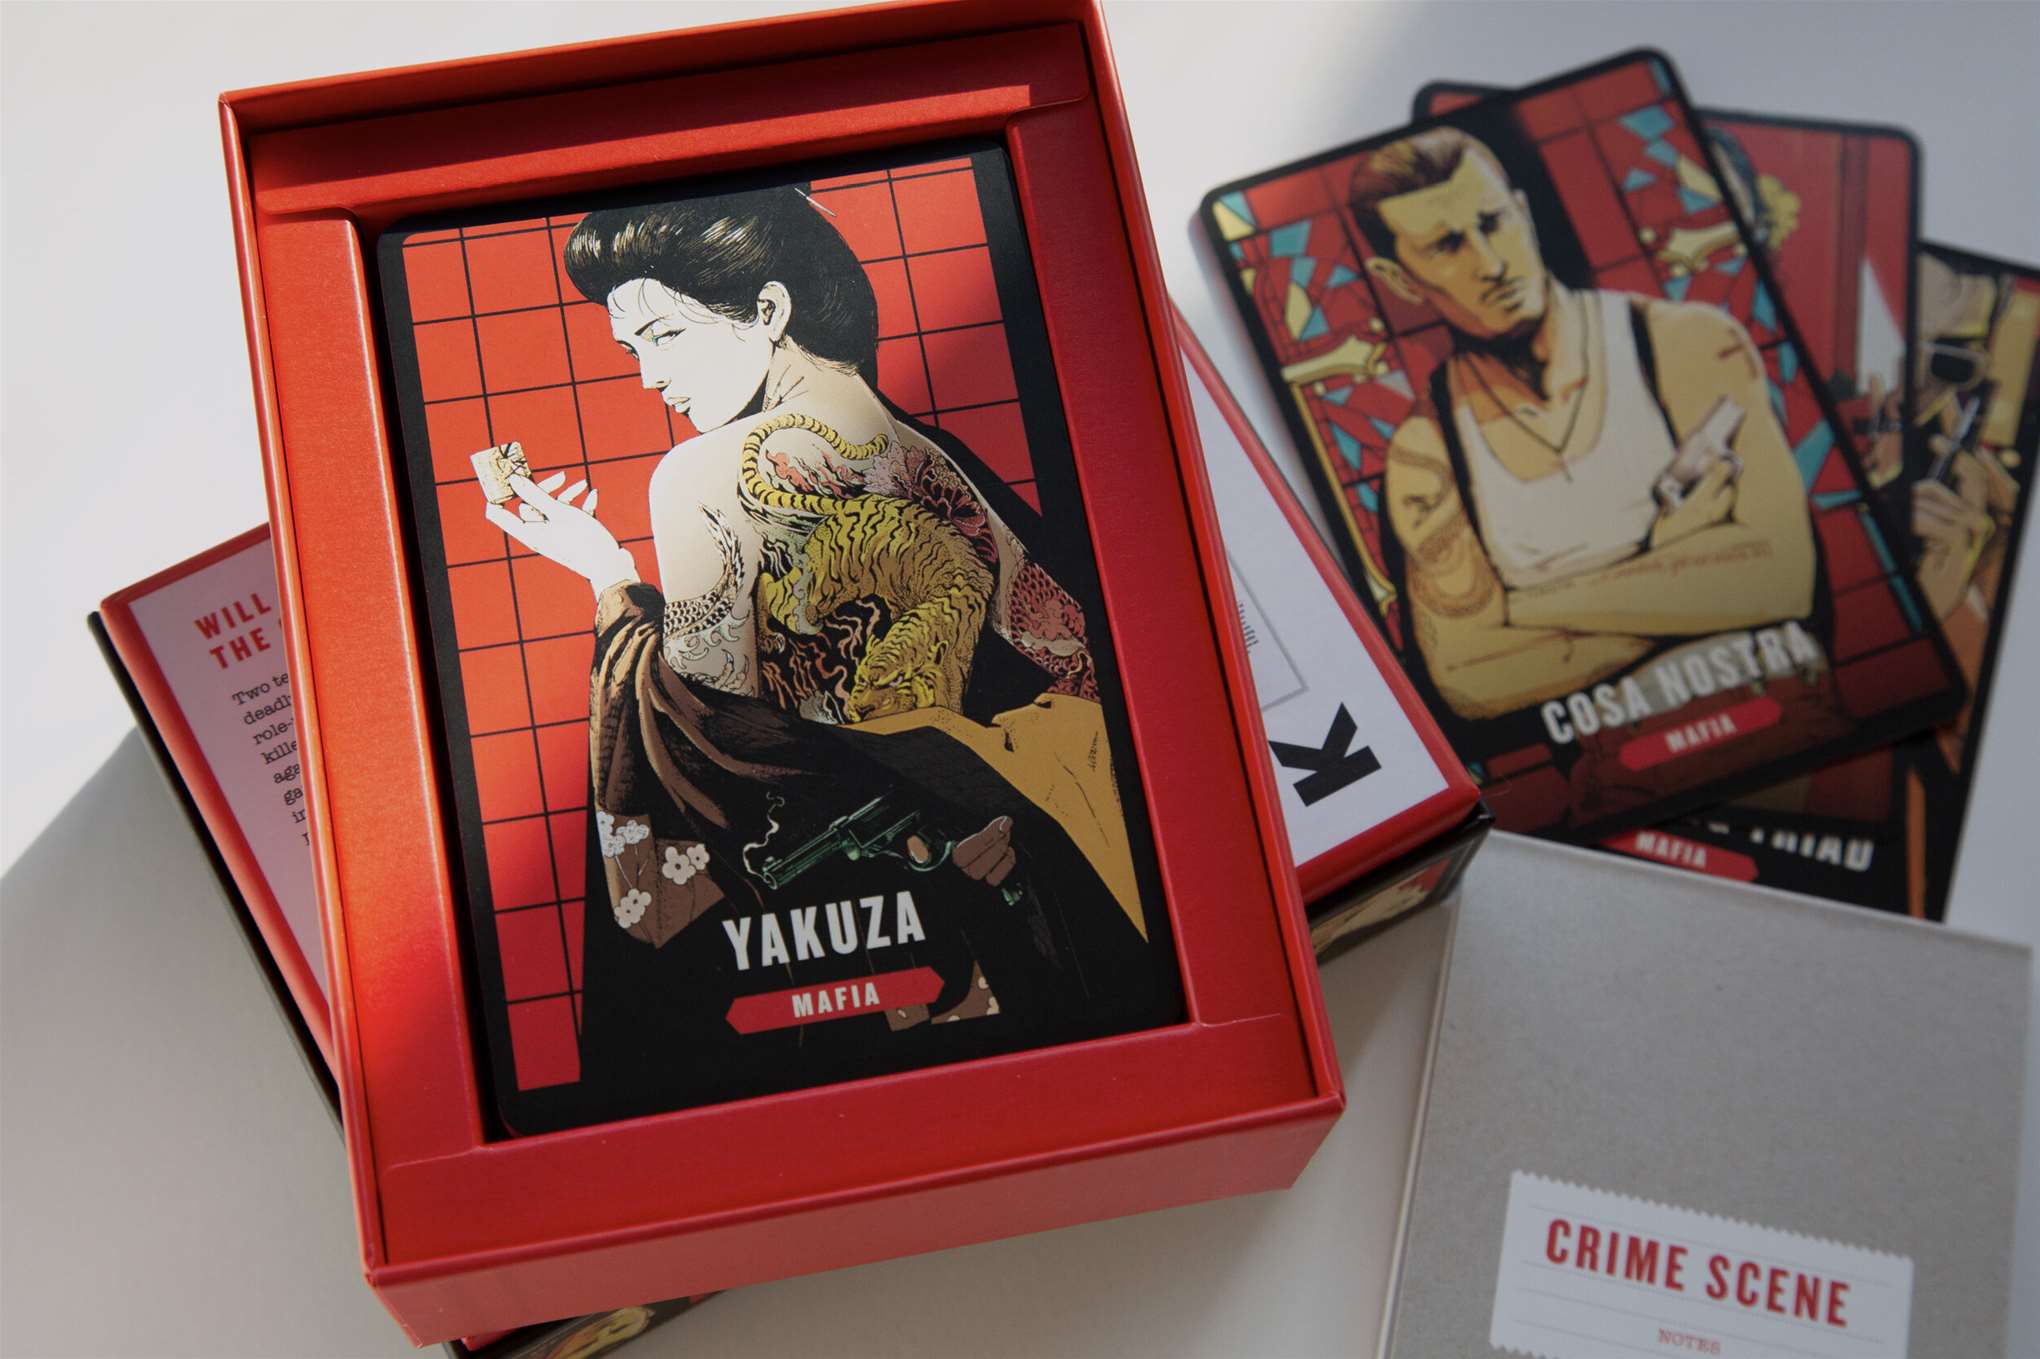 Shan Jiang, Yakuza Asian styled game illustrated by Shan Jiang.